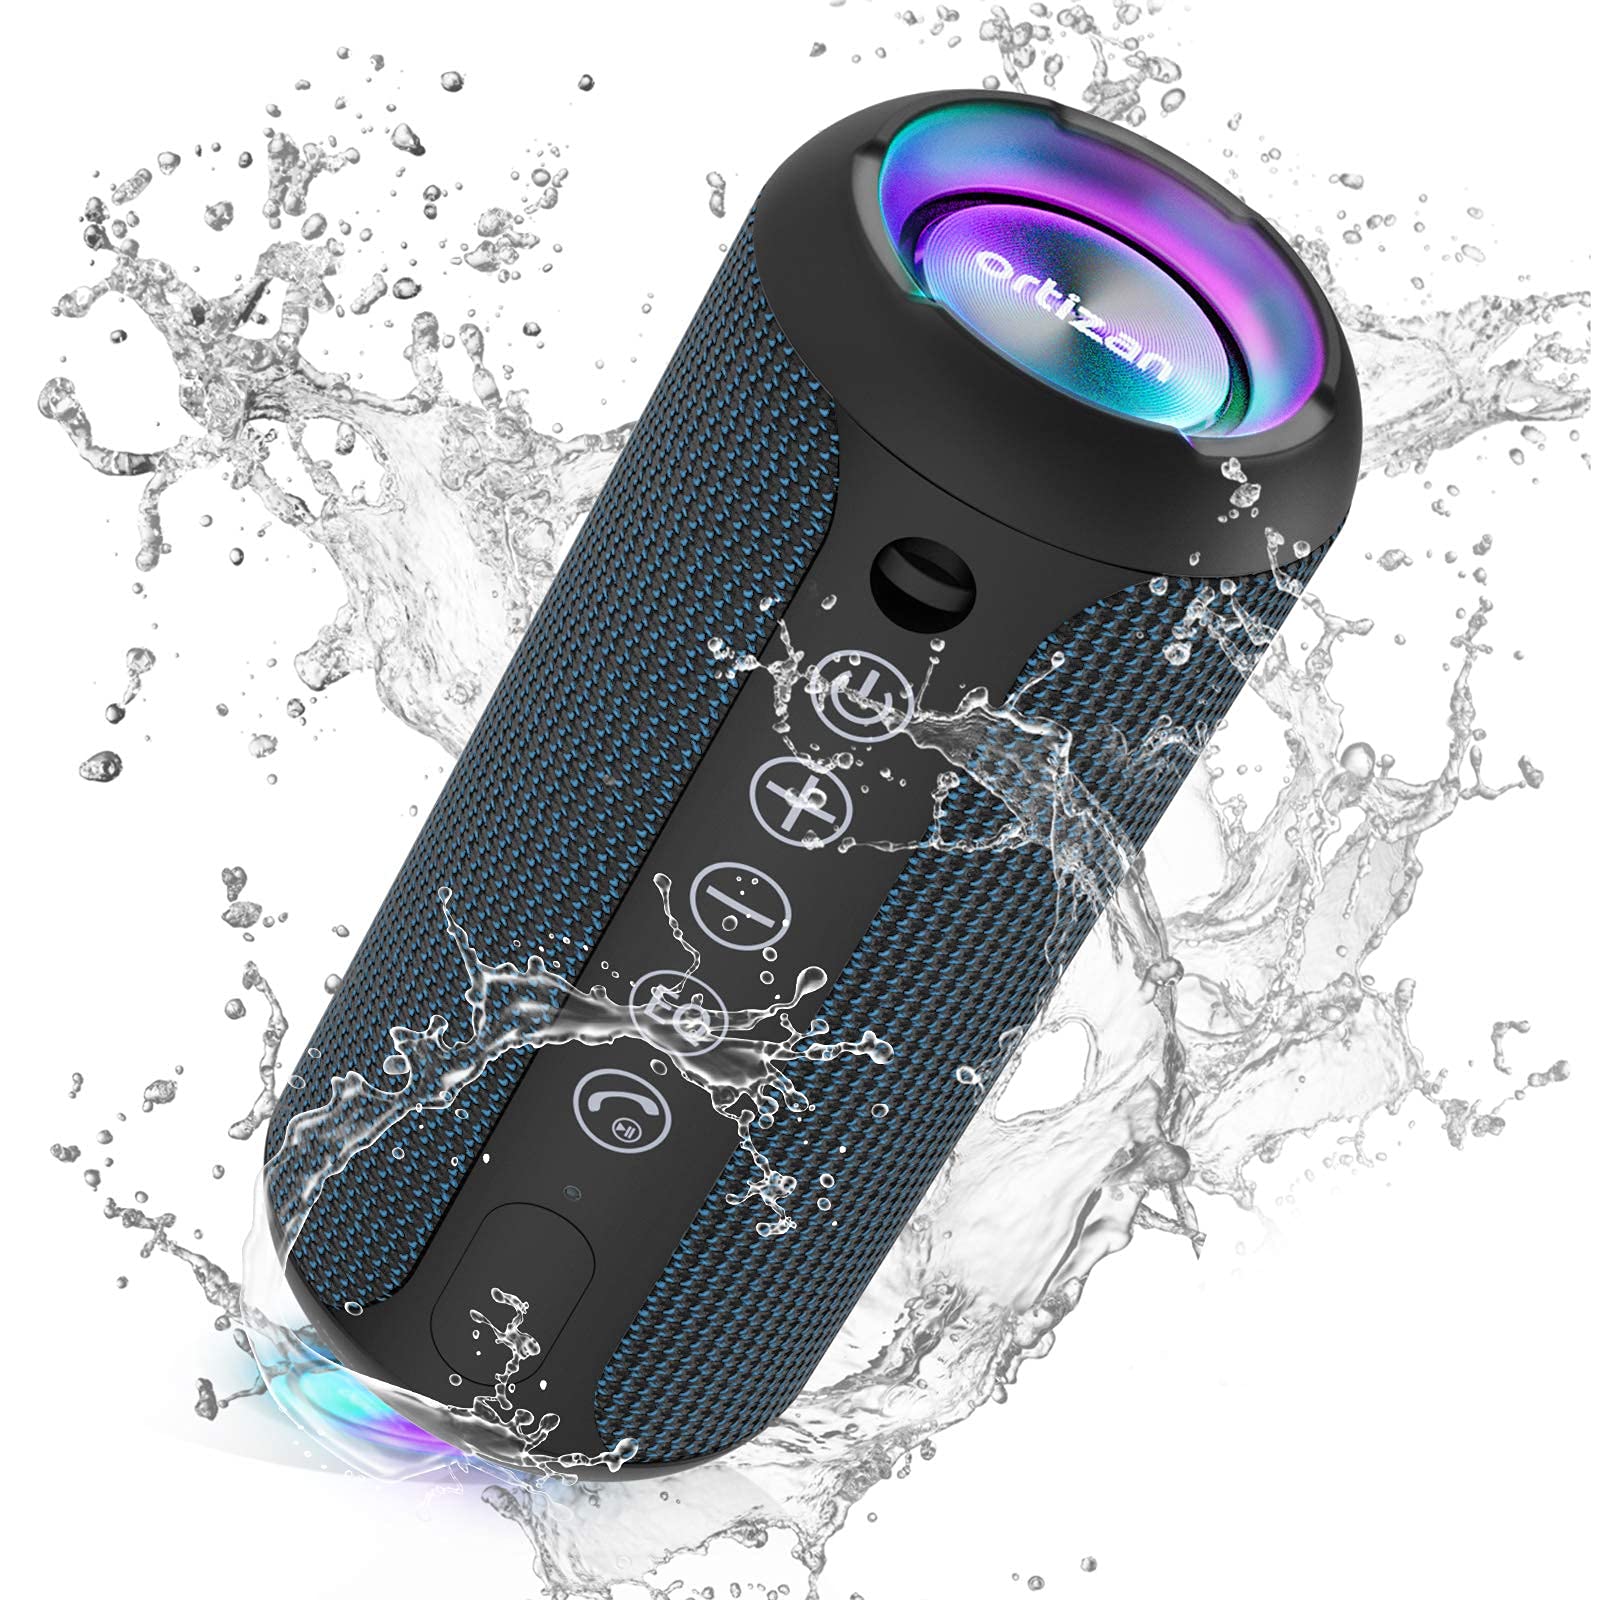 Ortizan Bluetooth スピーカー 防水IPX7でワイヤレス 30時間連続再生 24W出力ぶるーとぅーすすぴーかー ステレオのポータブルブルートゥ